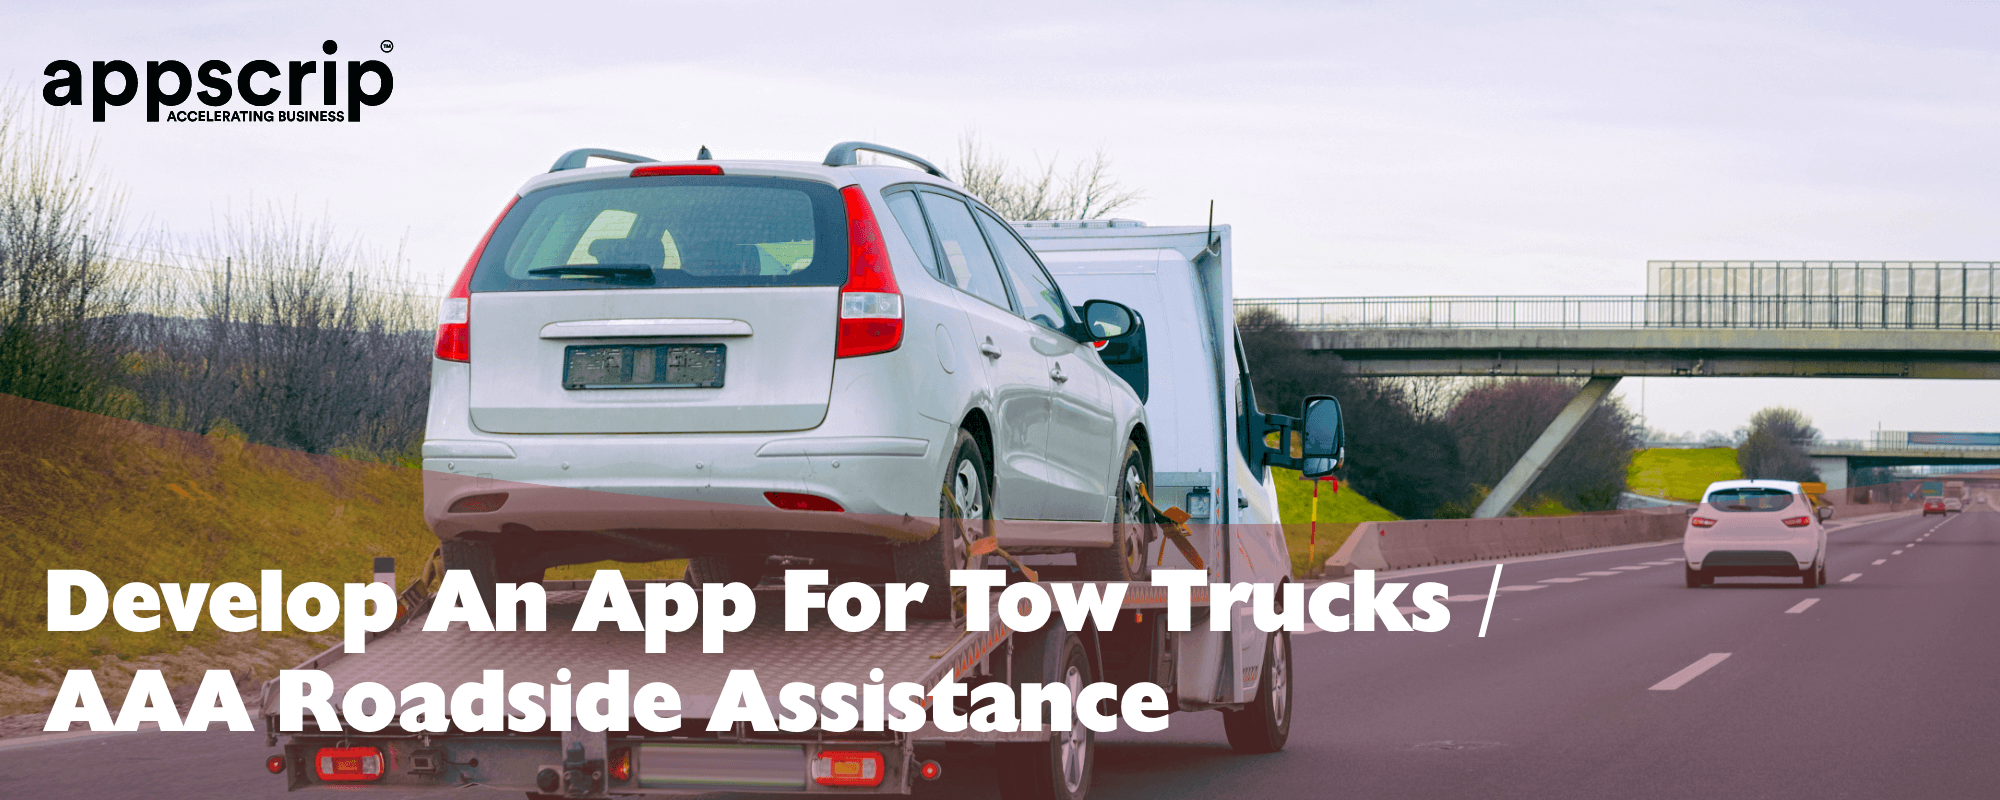 App for tow trucks